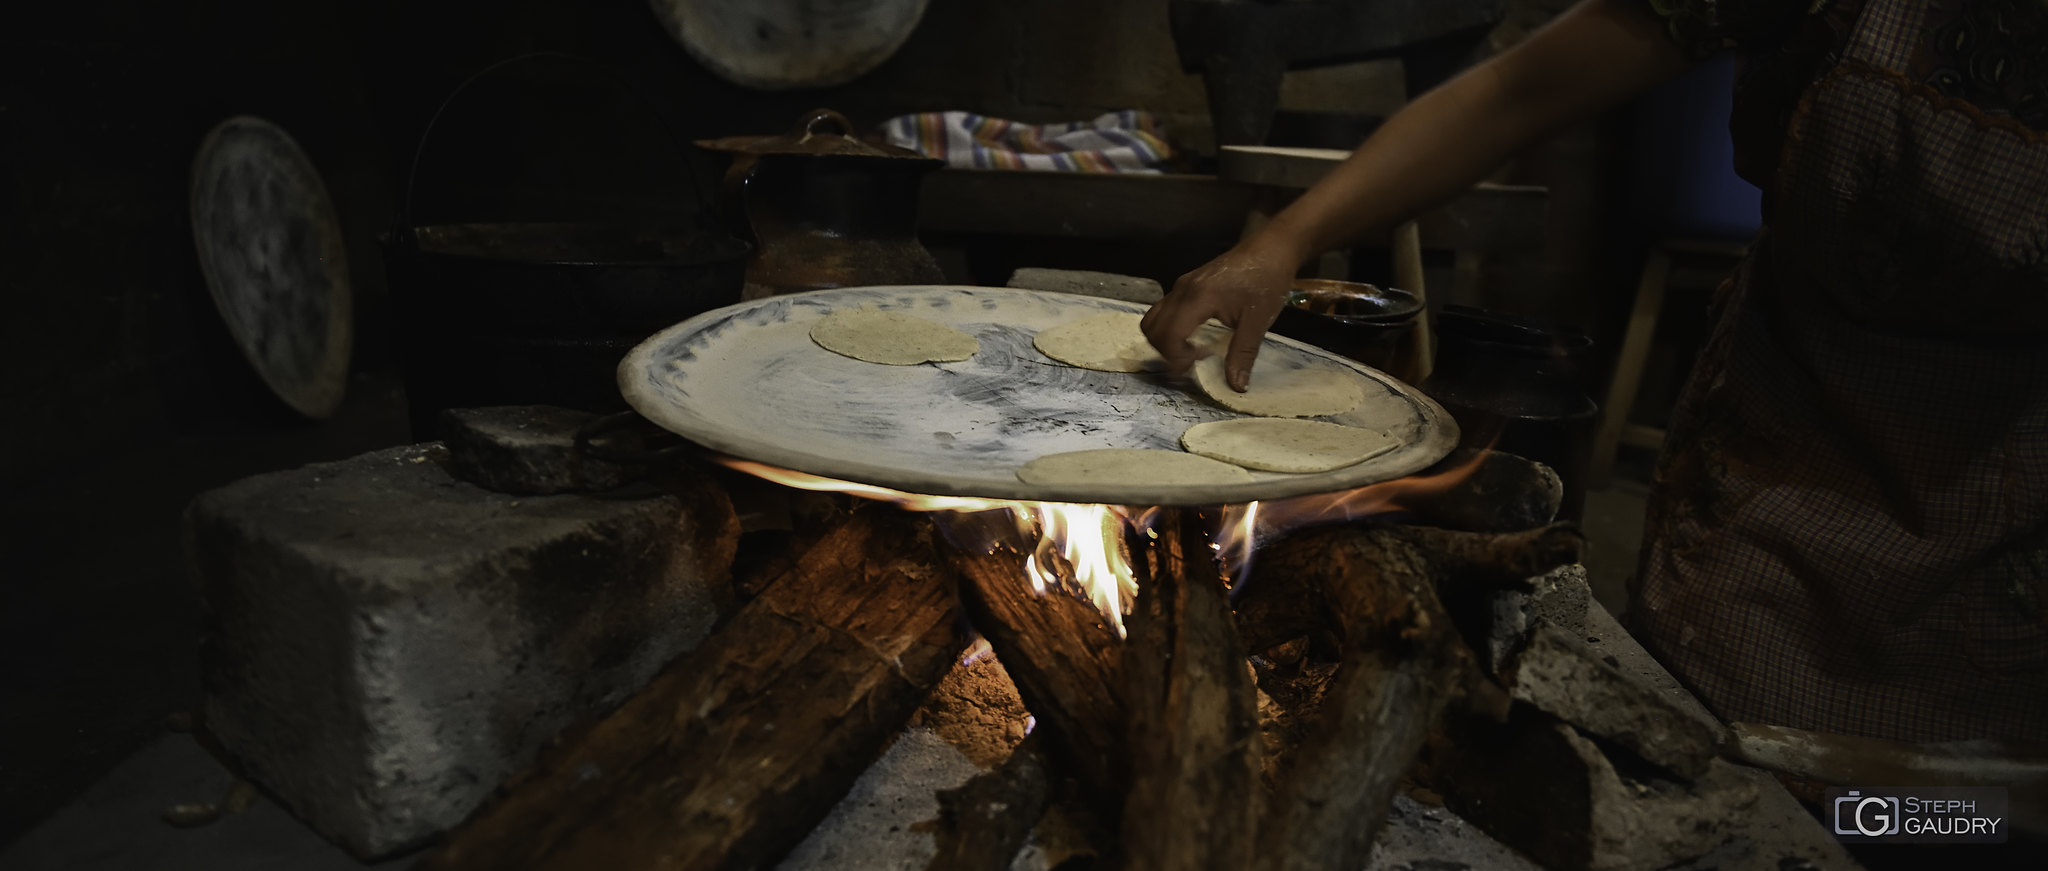 Tacos mexicanos - cocinar a fuego de leña [Cliquez pour lancer le diaporama]